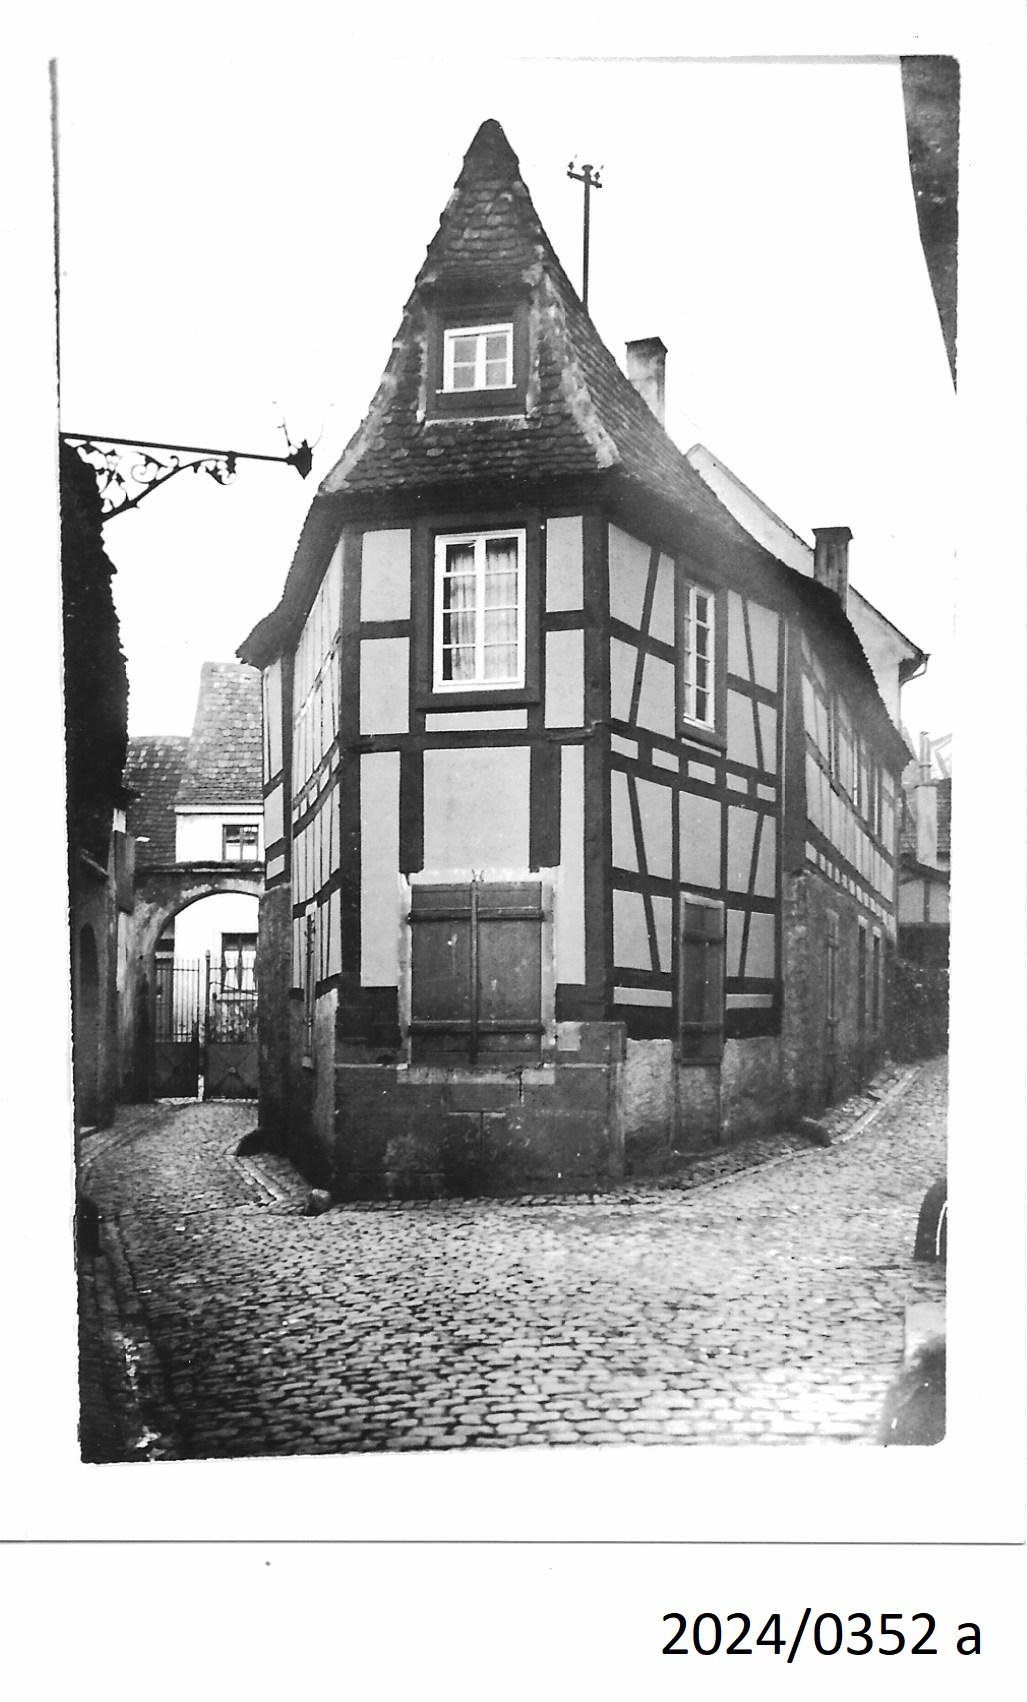 Bad Dürkheim, Kleines Fachwerkhaus in einer Seitengasse in der Altstadt, 1930er Jahre (Stadtmuseum Bad Dürkheim im Kulturzentrum Haus Catoir CC BY-NC-SA)